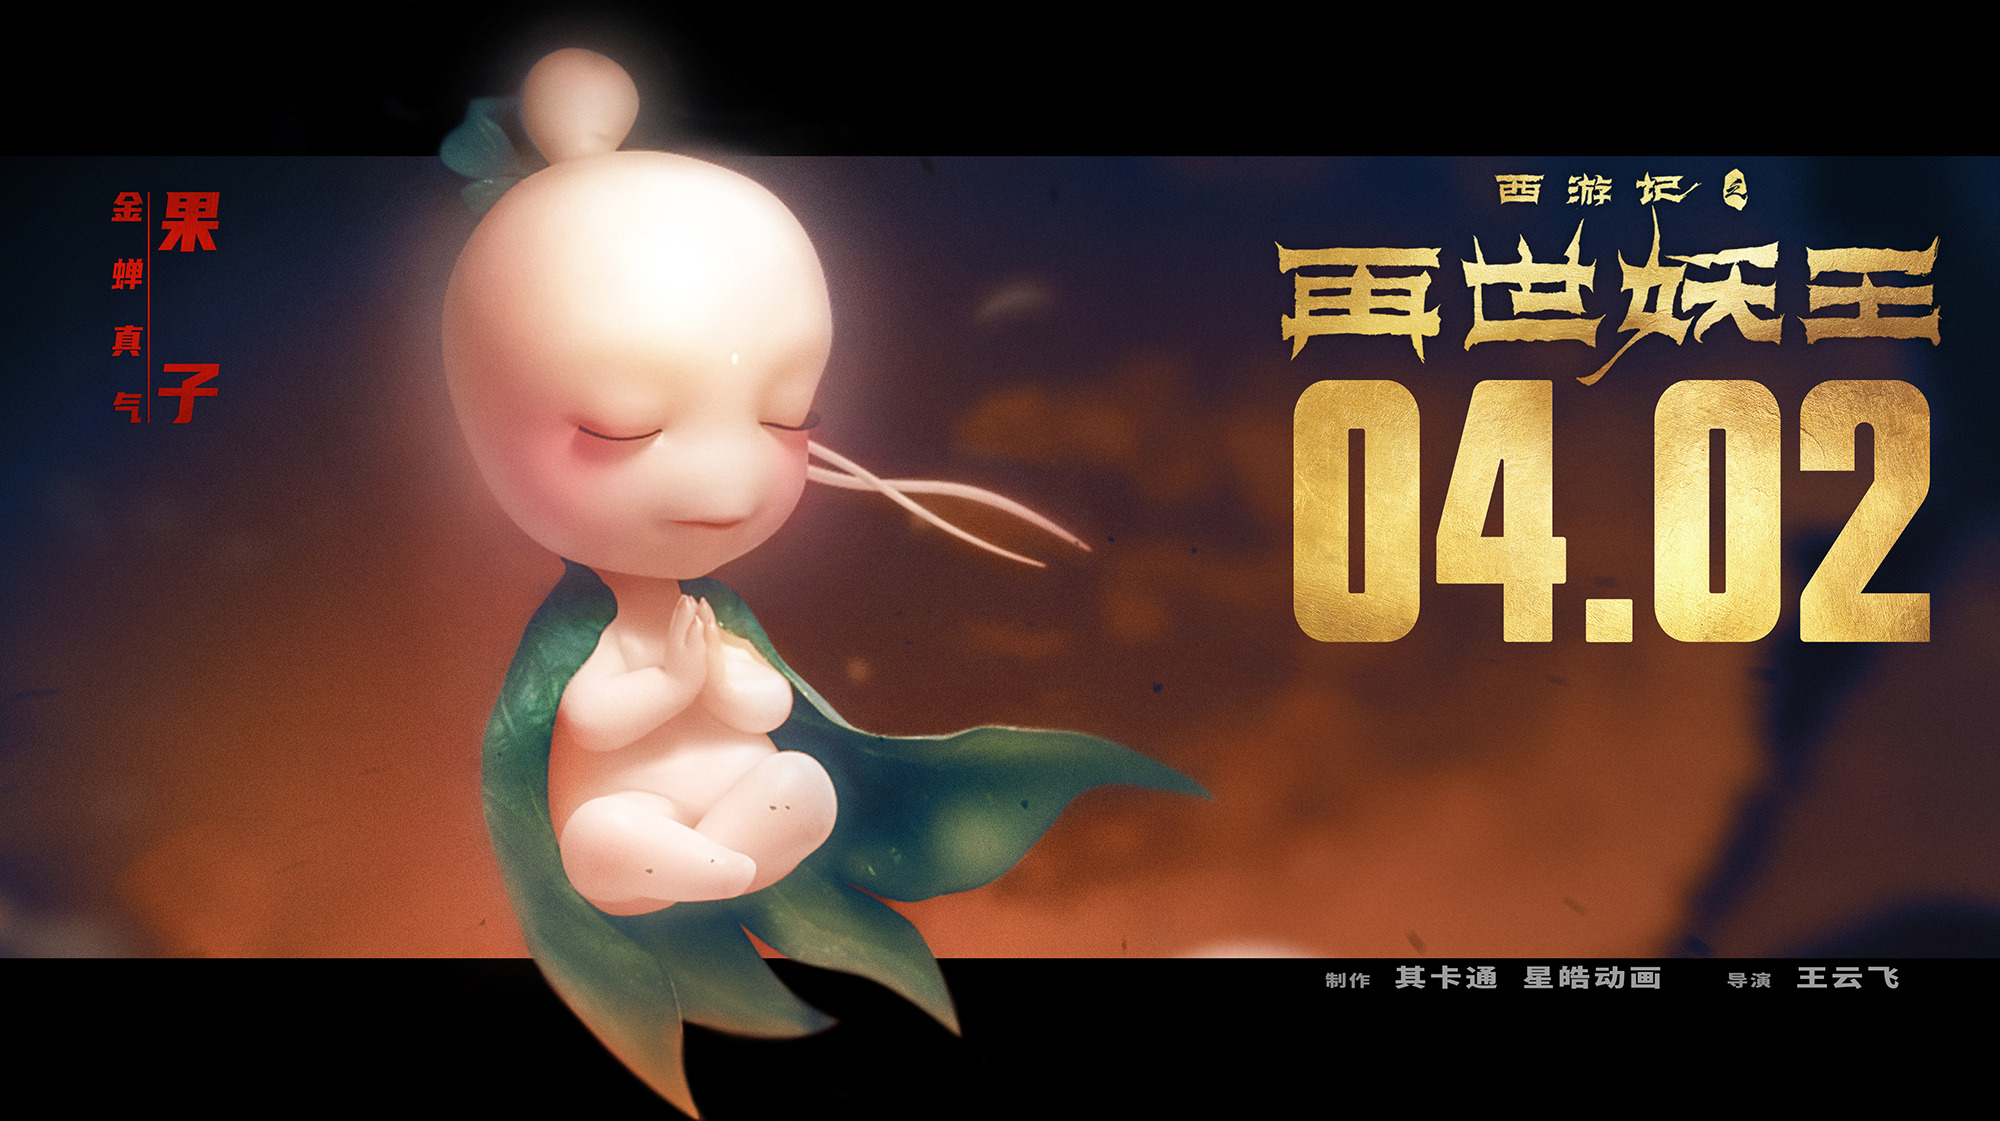 Mega Sized Movie Poster Image for Xi You Ji Zhi Zai Shi Yao Wang (#3 of 21)